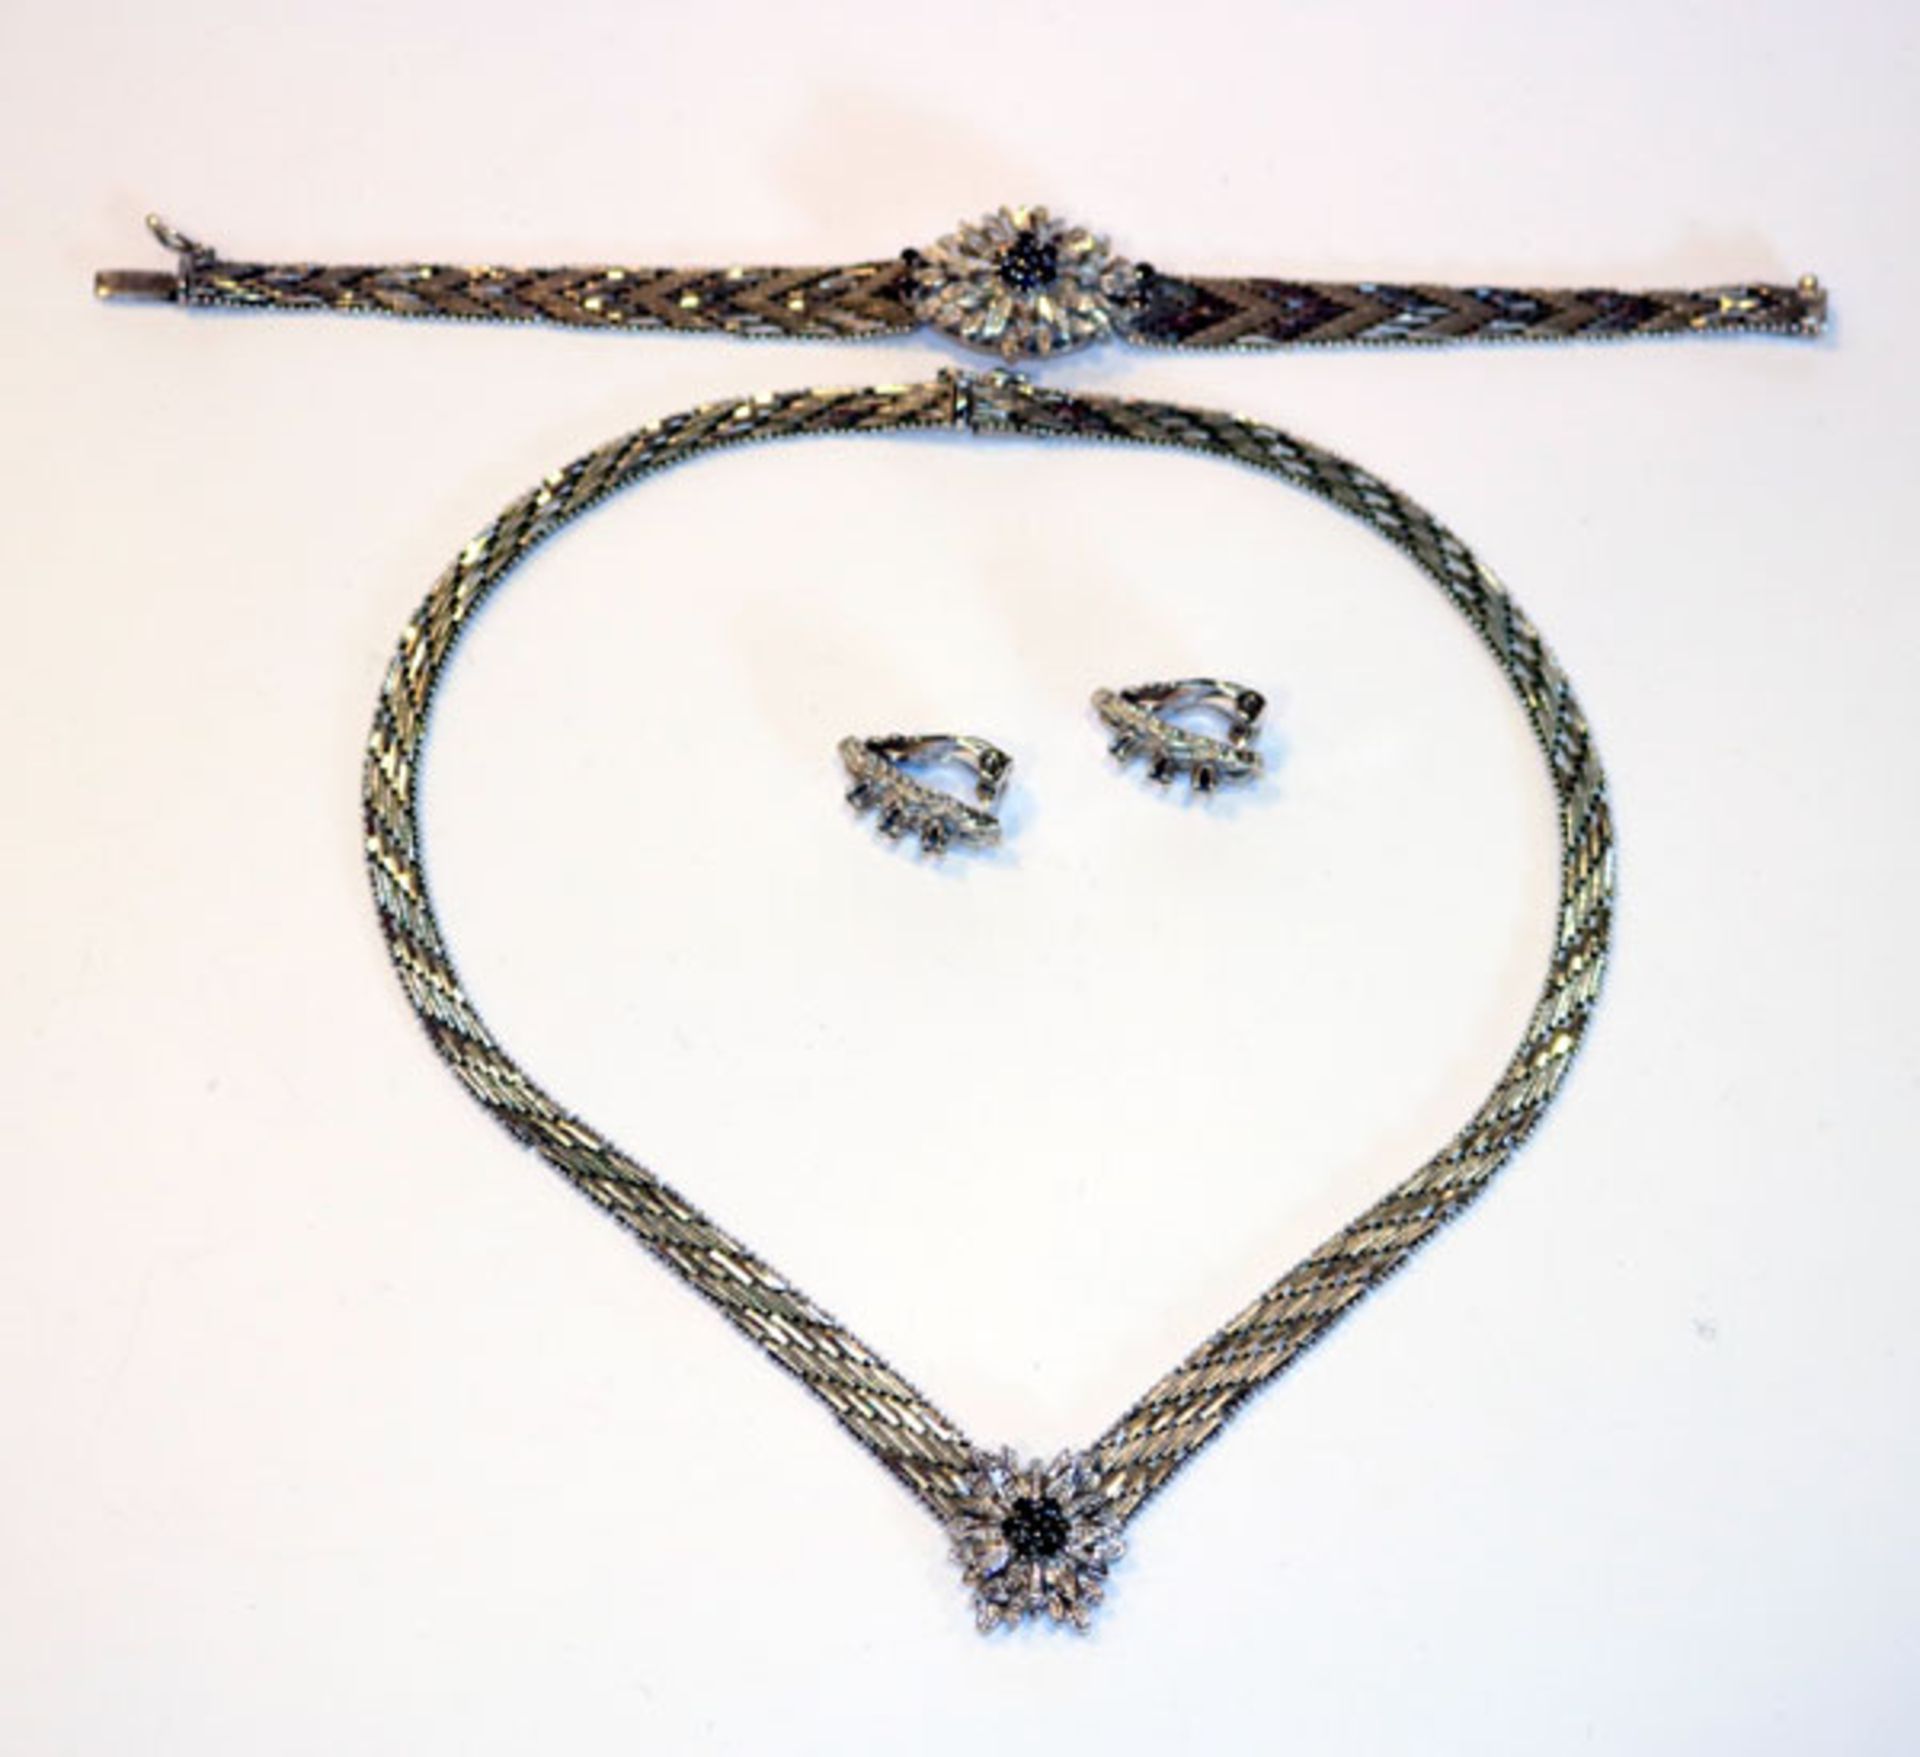 Silber Schmuckset: Collier, L 36 cm, Armband, L 18,5 cm, und Paar Ohrclips, alles teils mattiert und